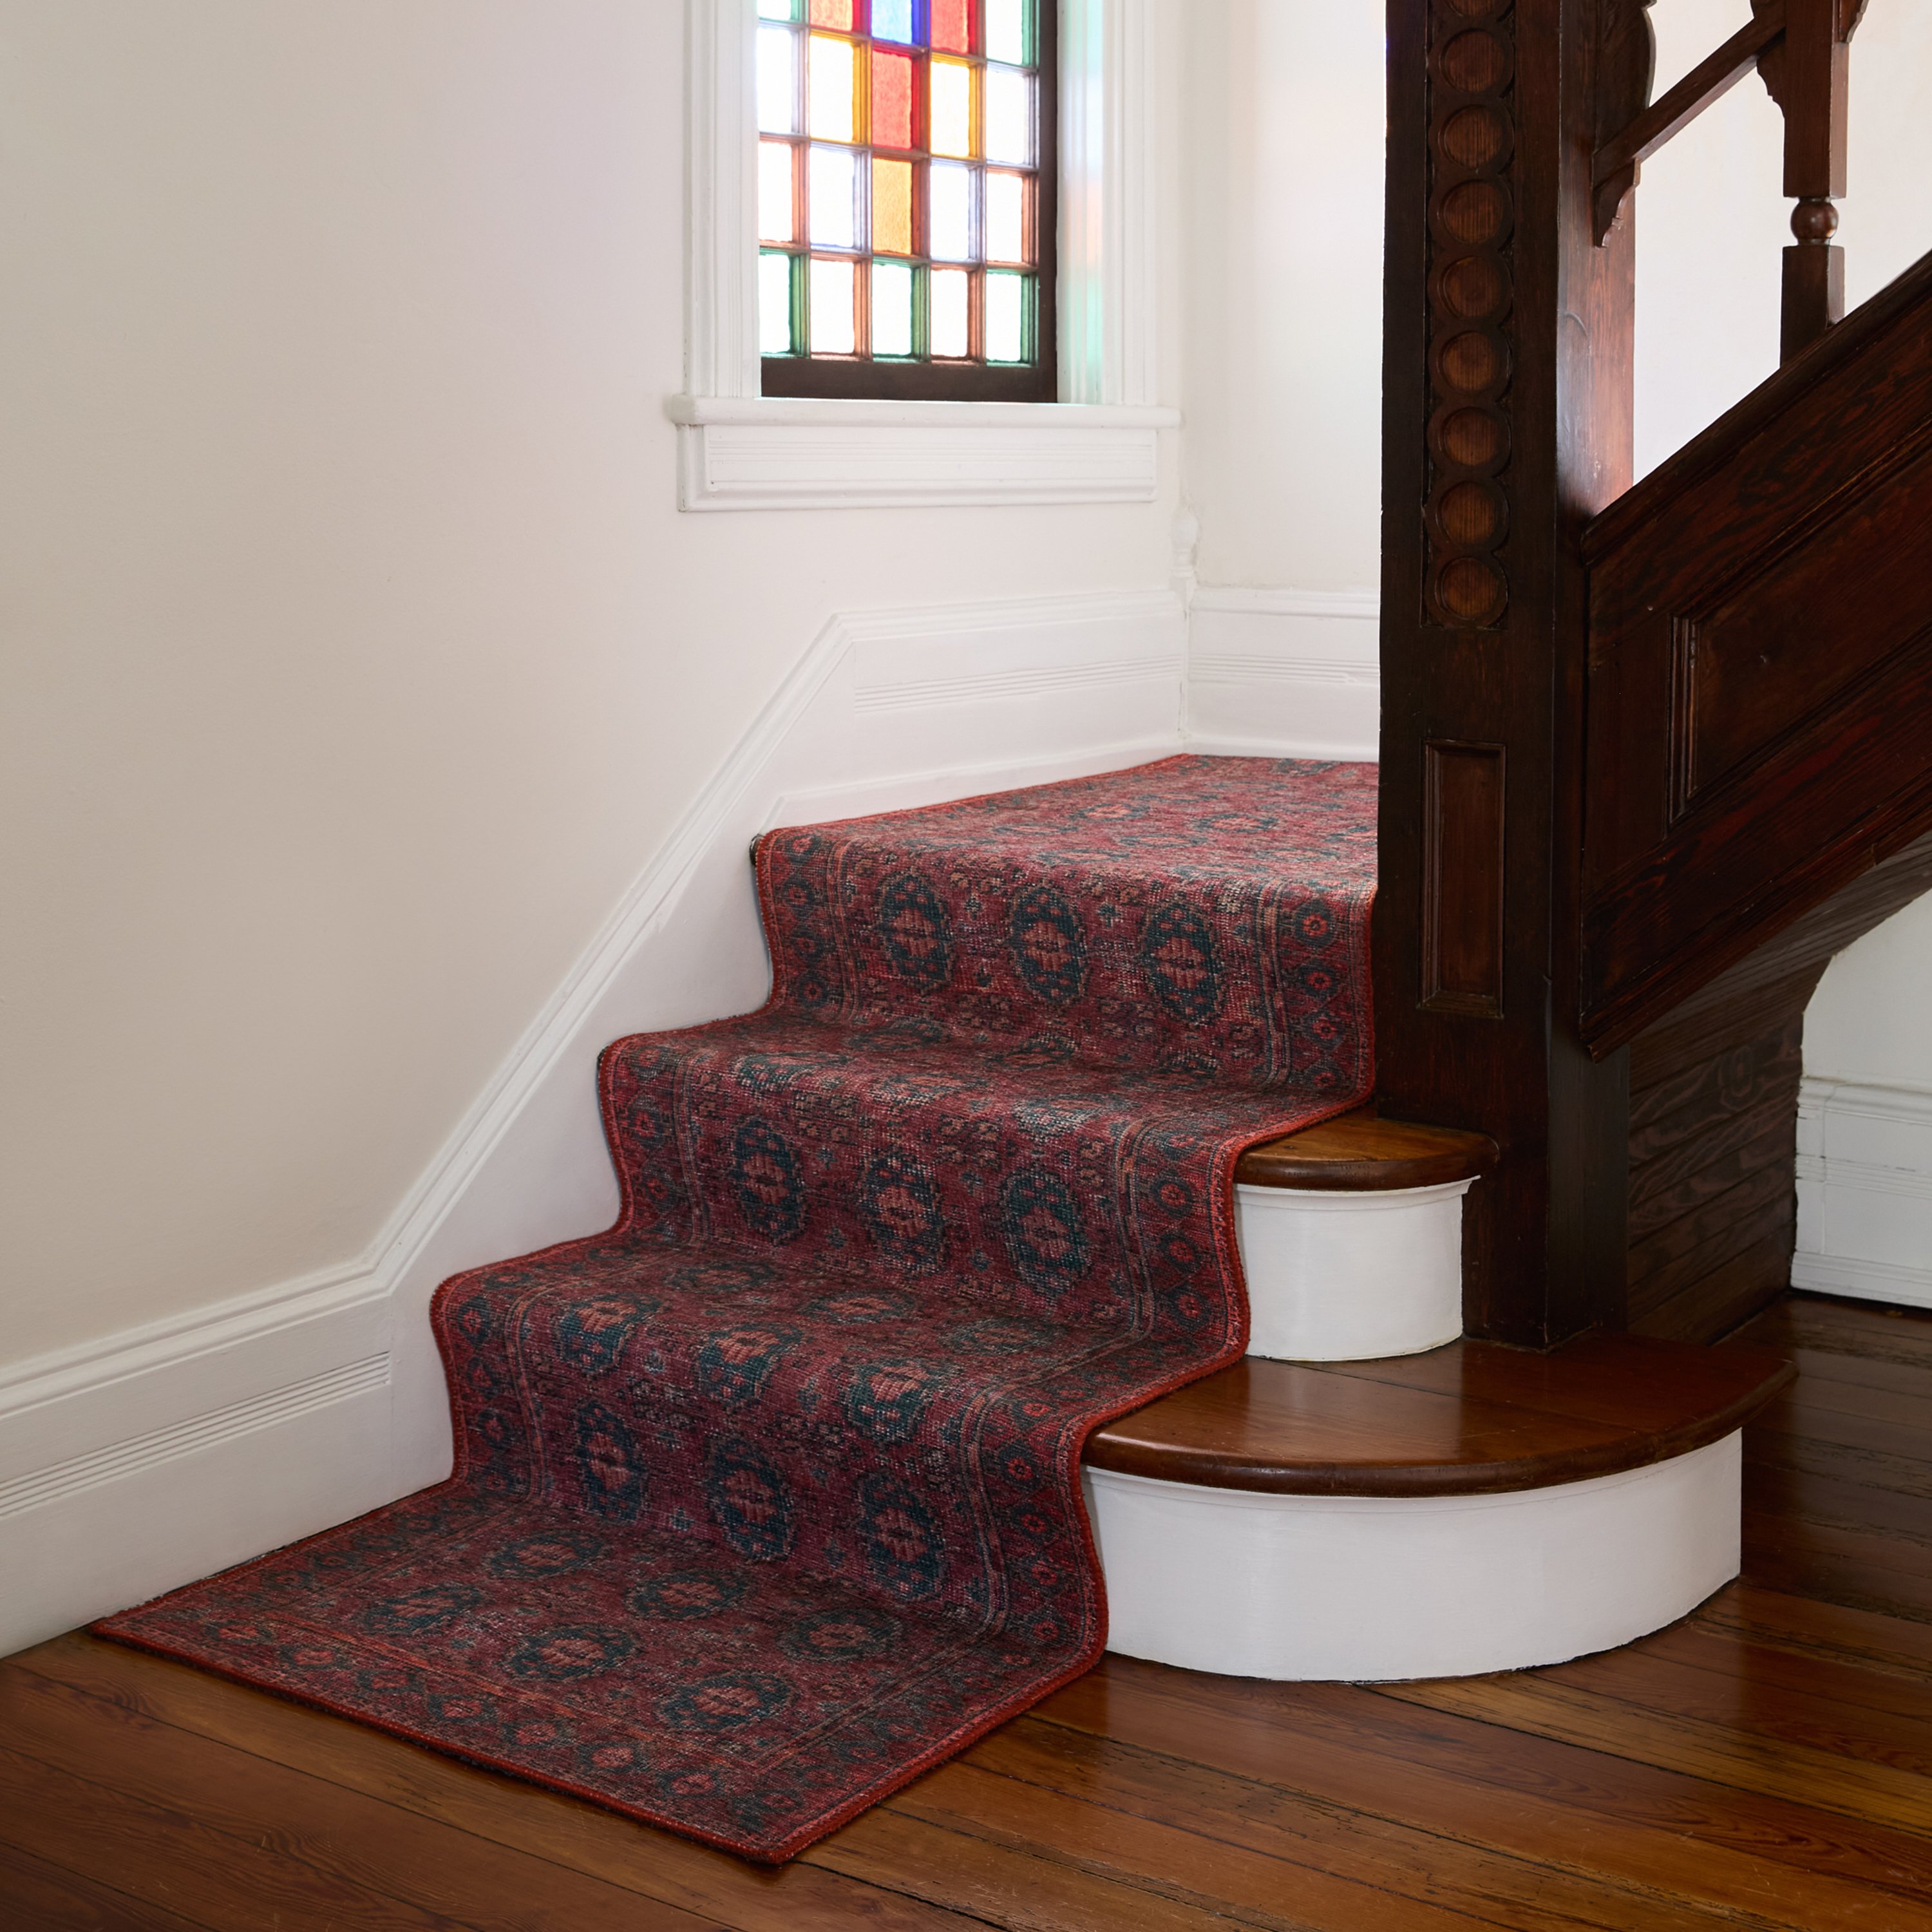 Staircases - Runner Rug Sizes